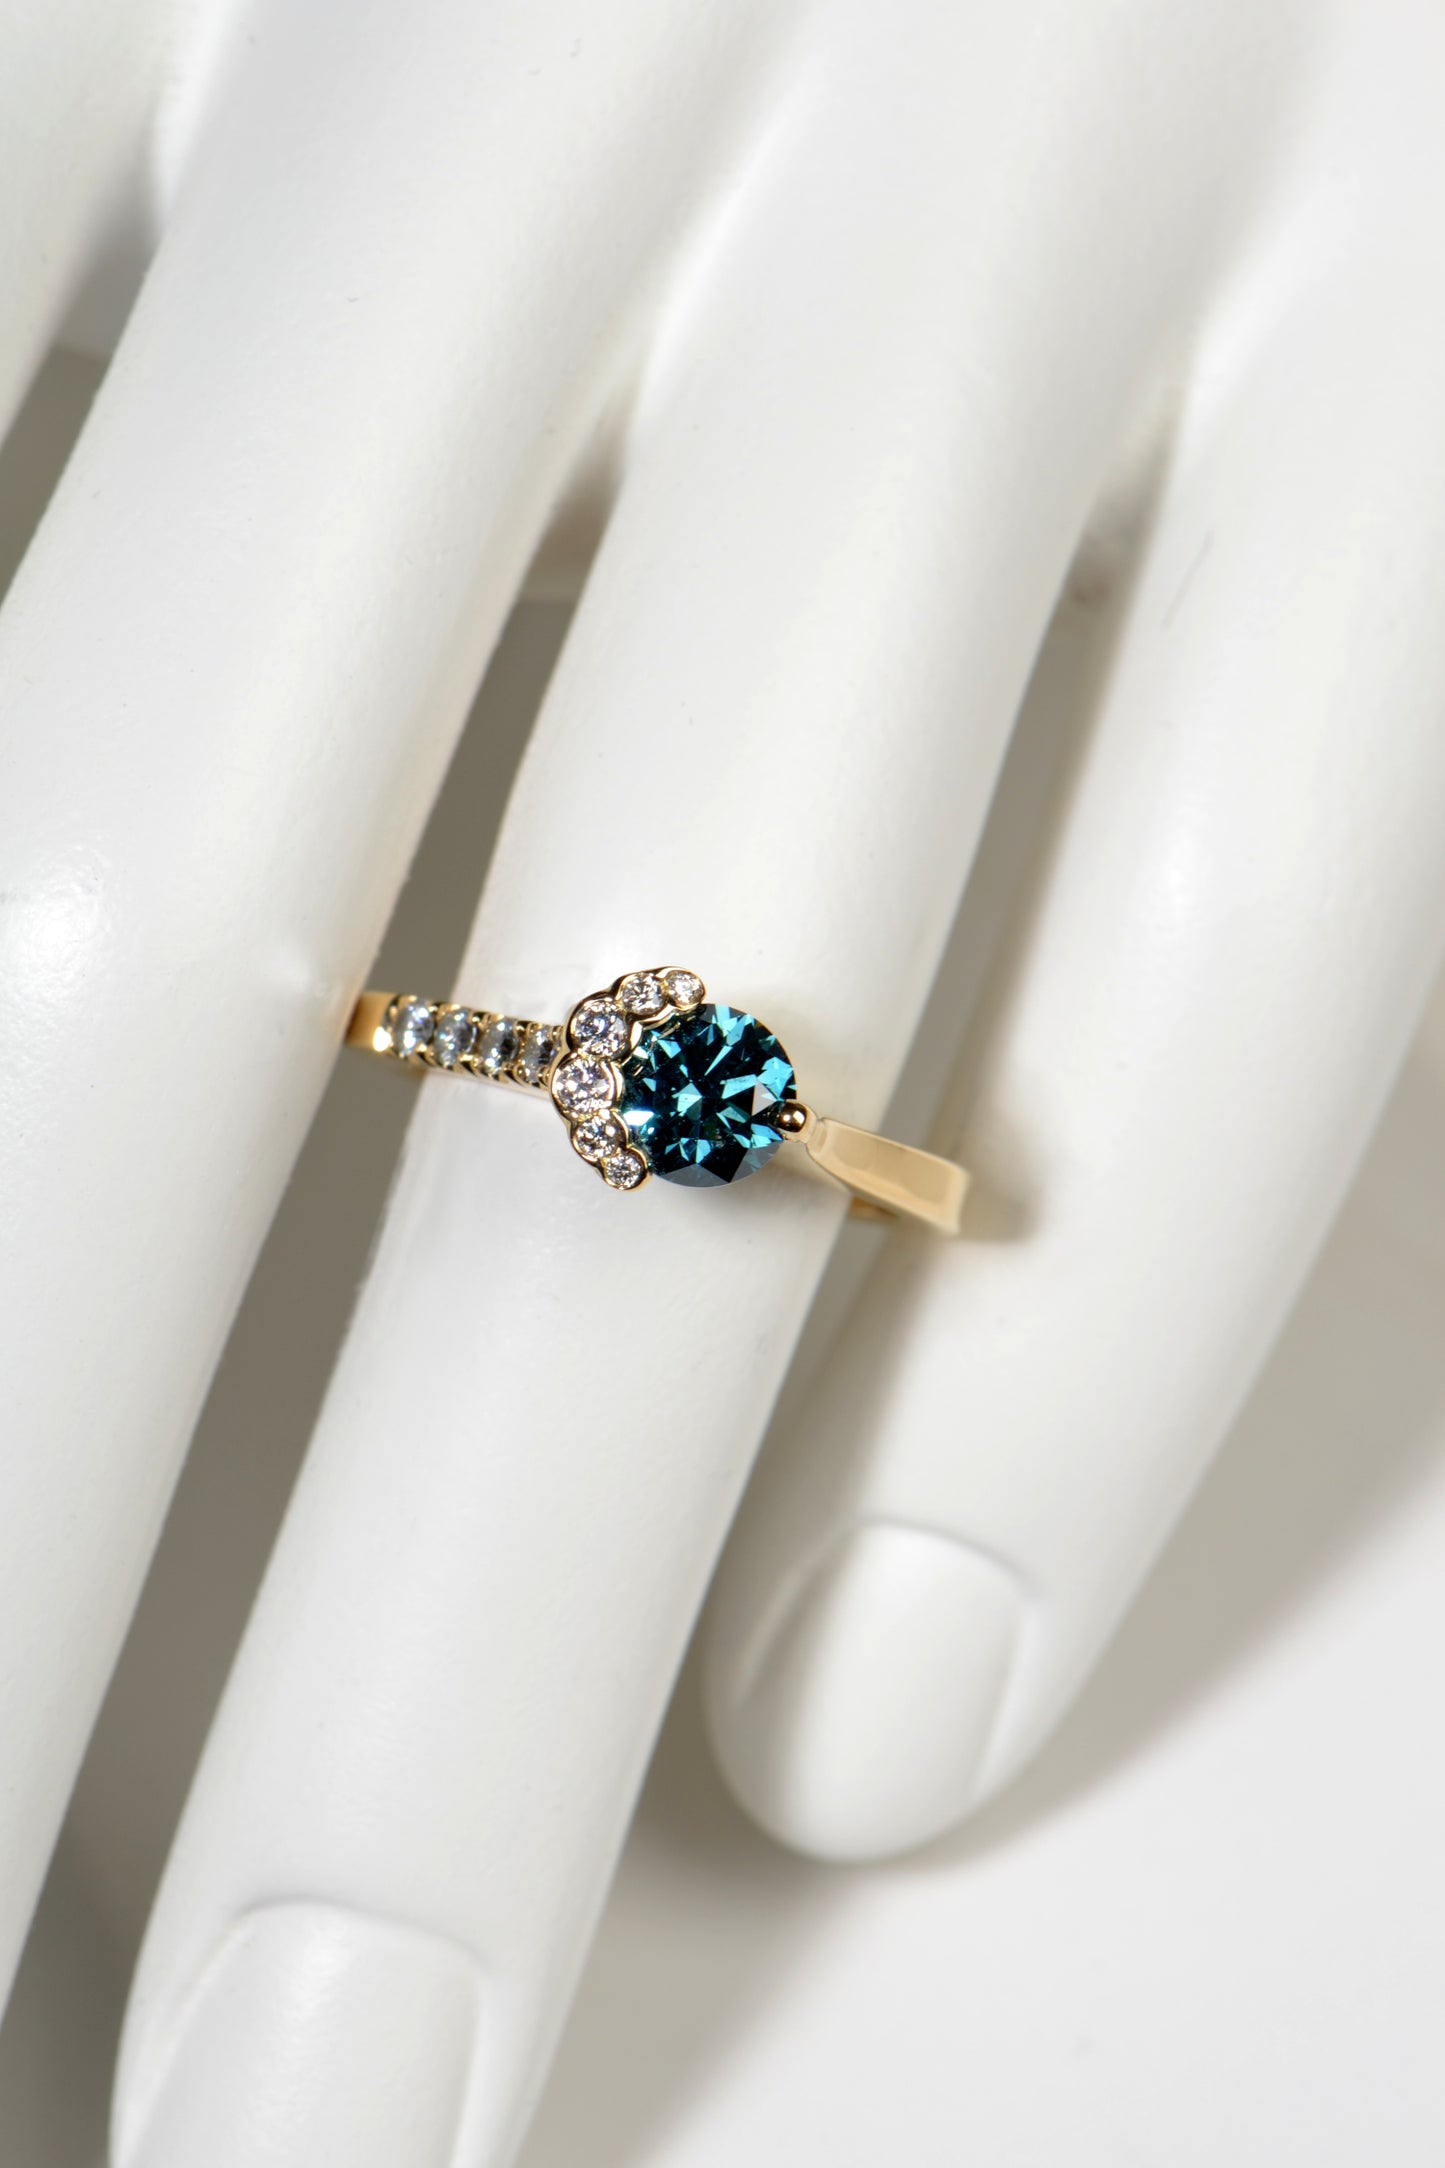 scottish designer Christine Sadler's exclusive Fairypools engagement ring